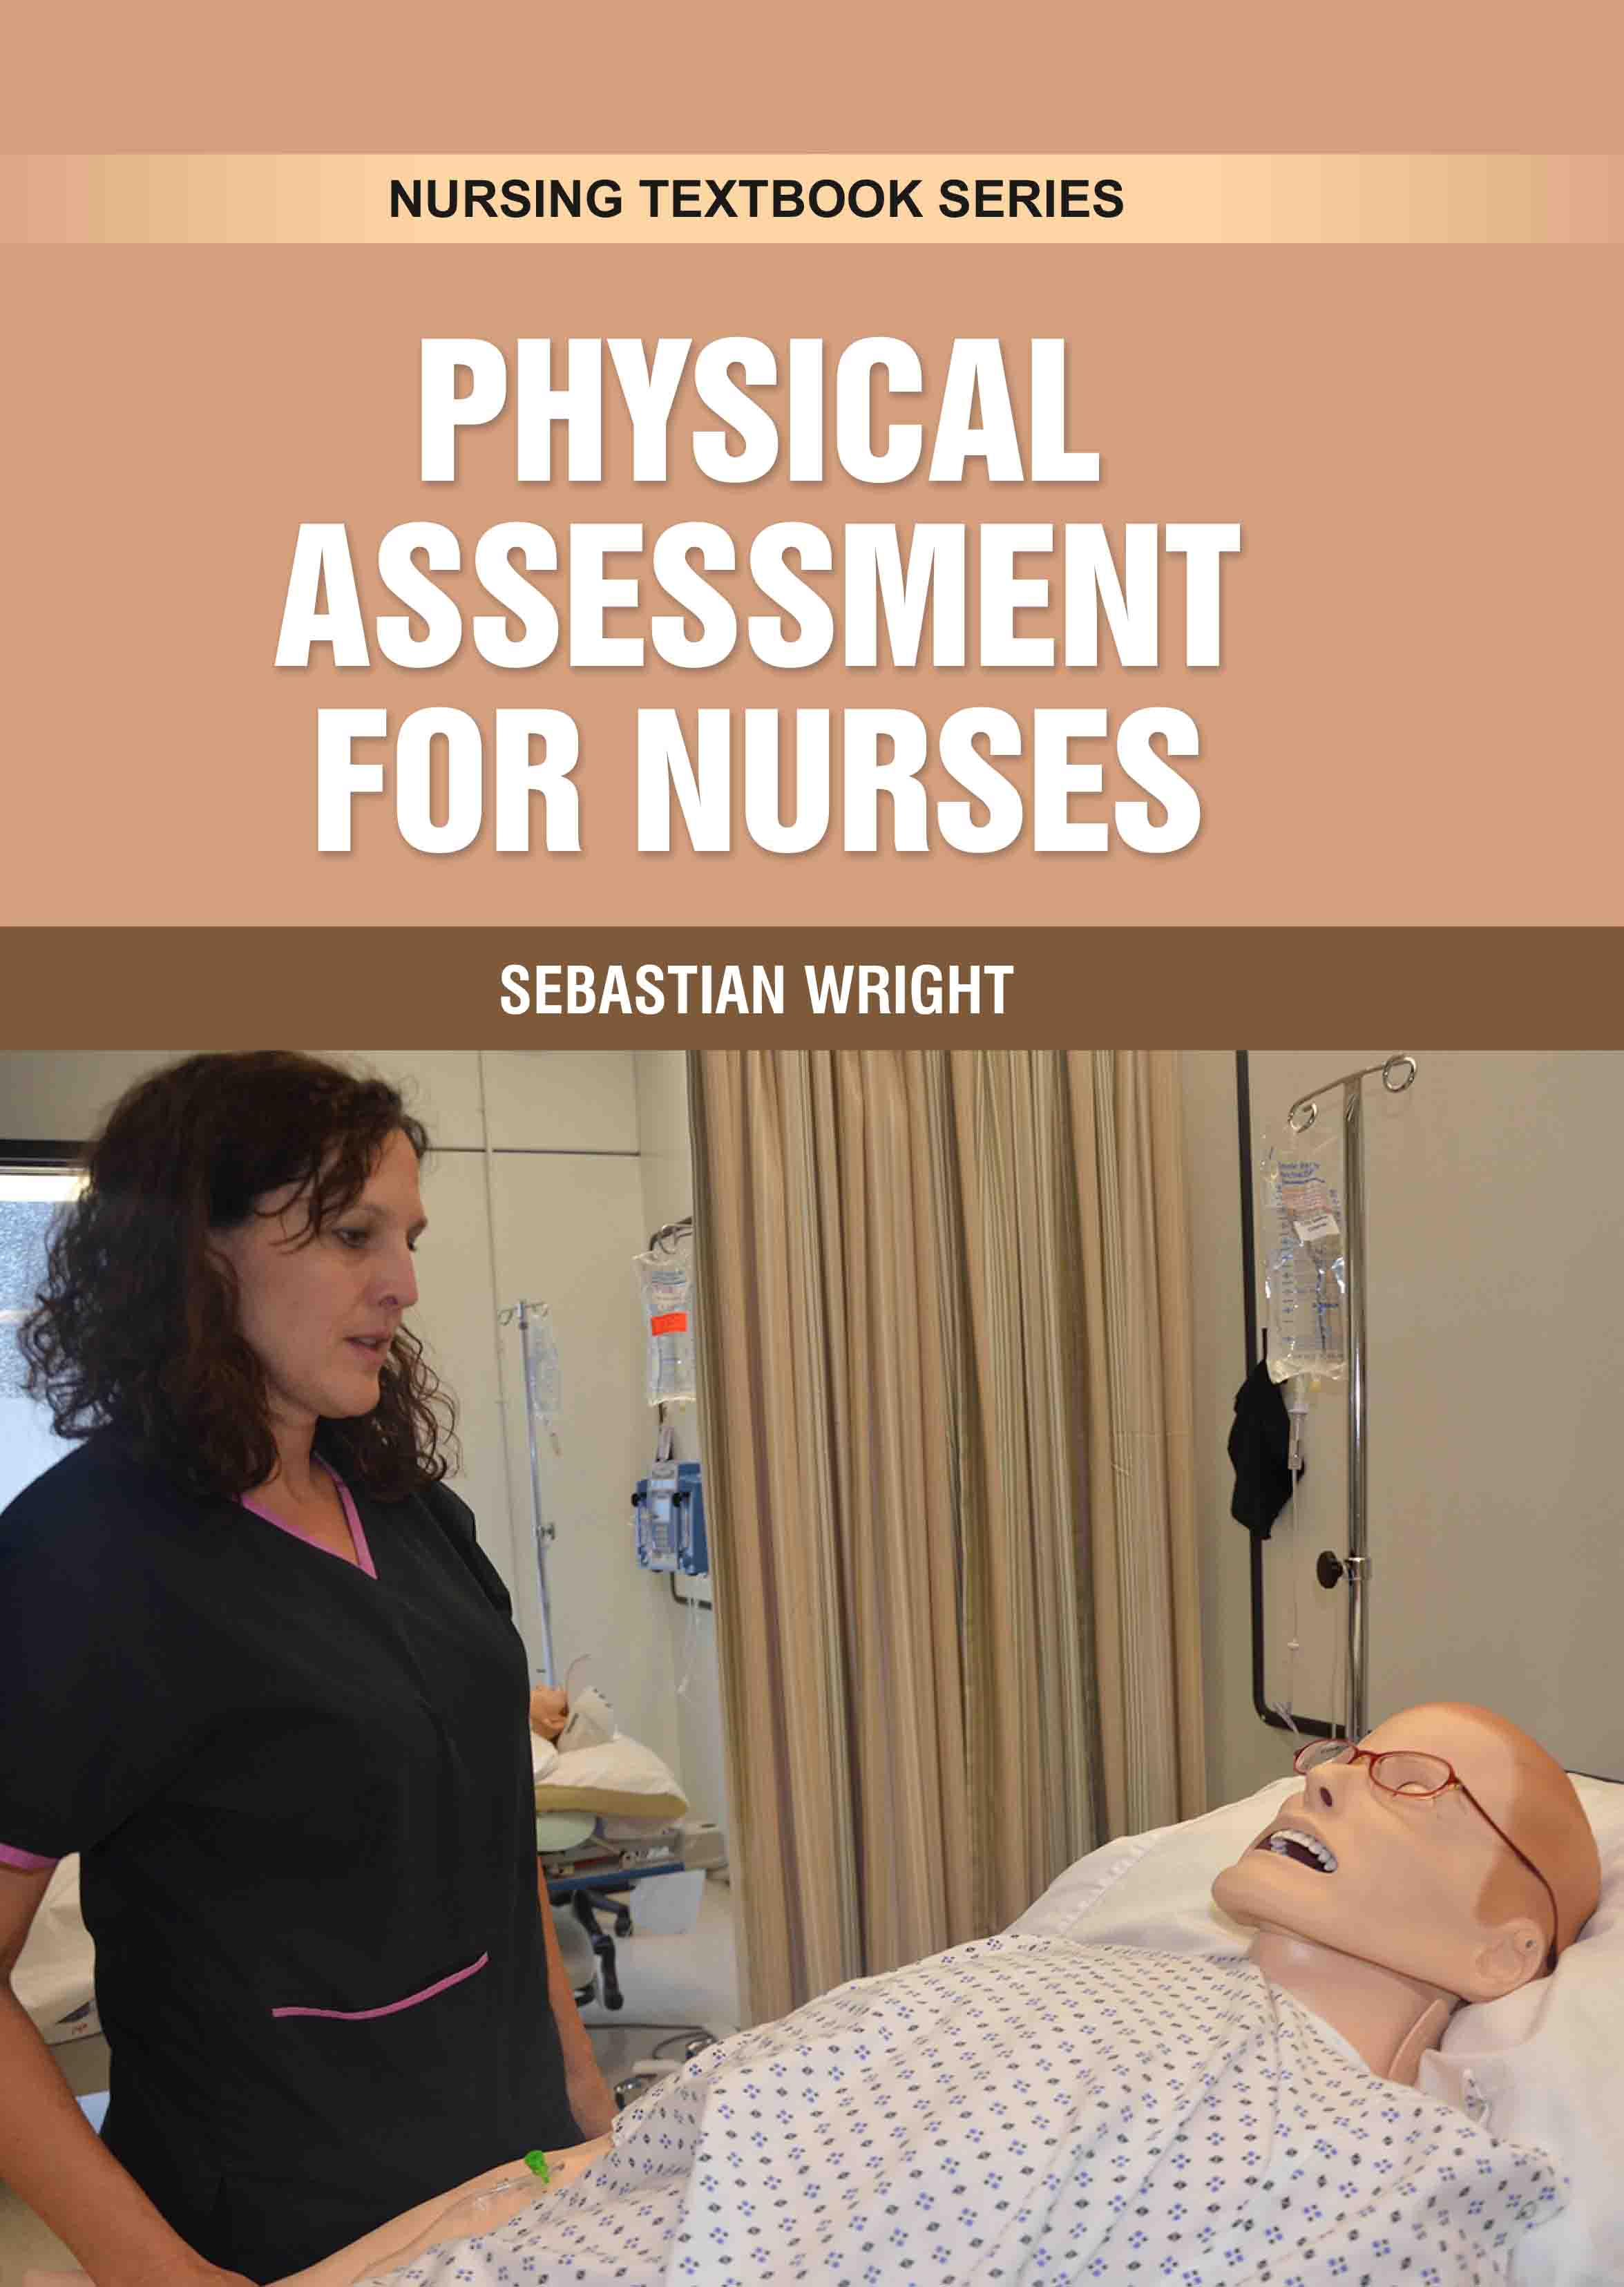 Physical Assessment for Nurses